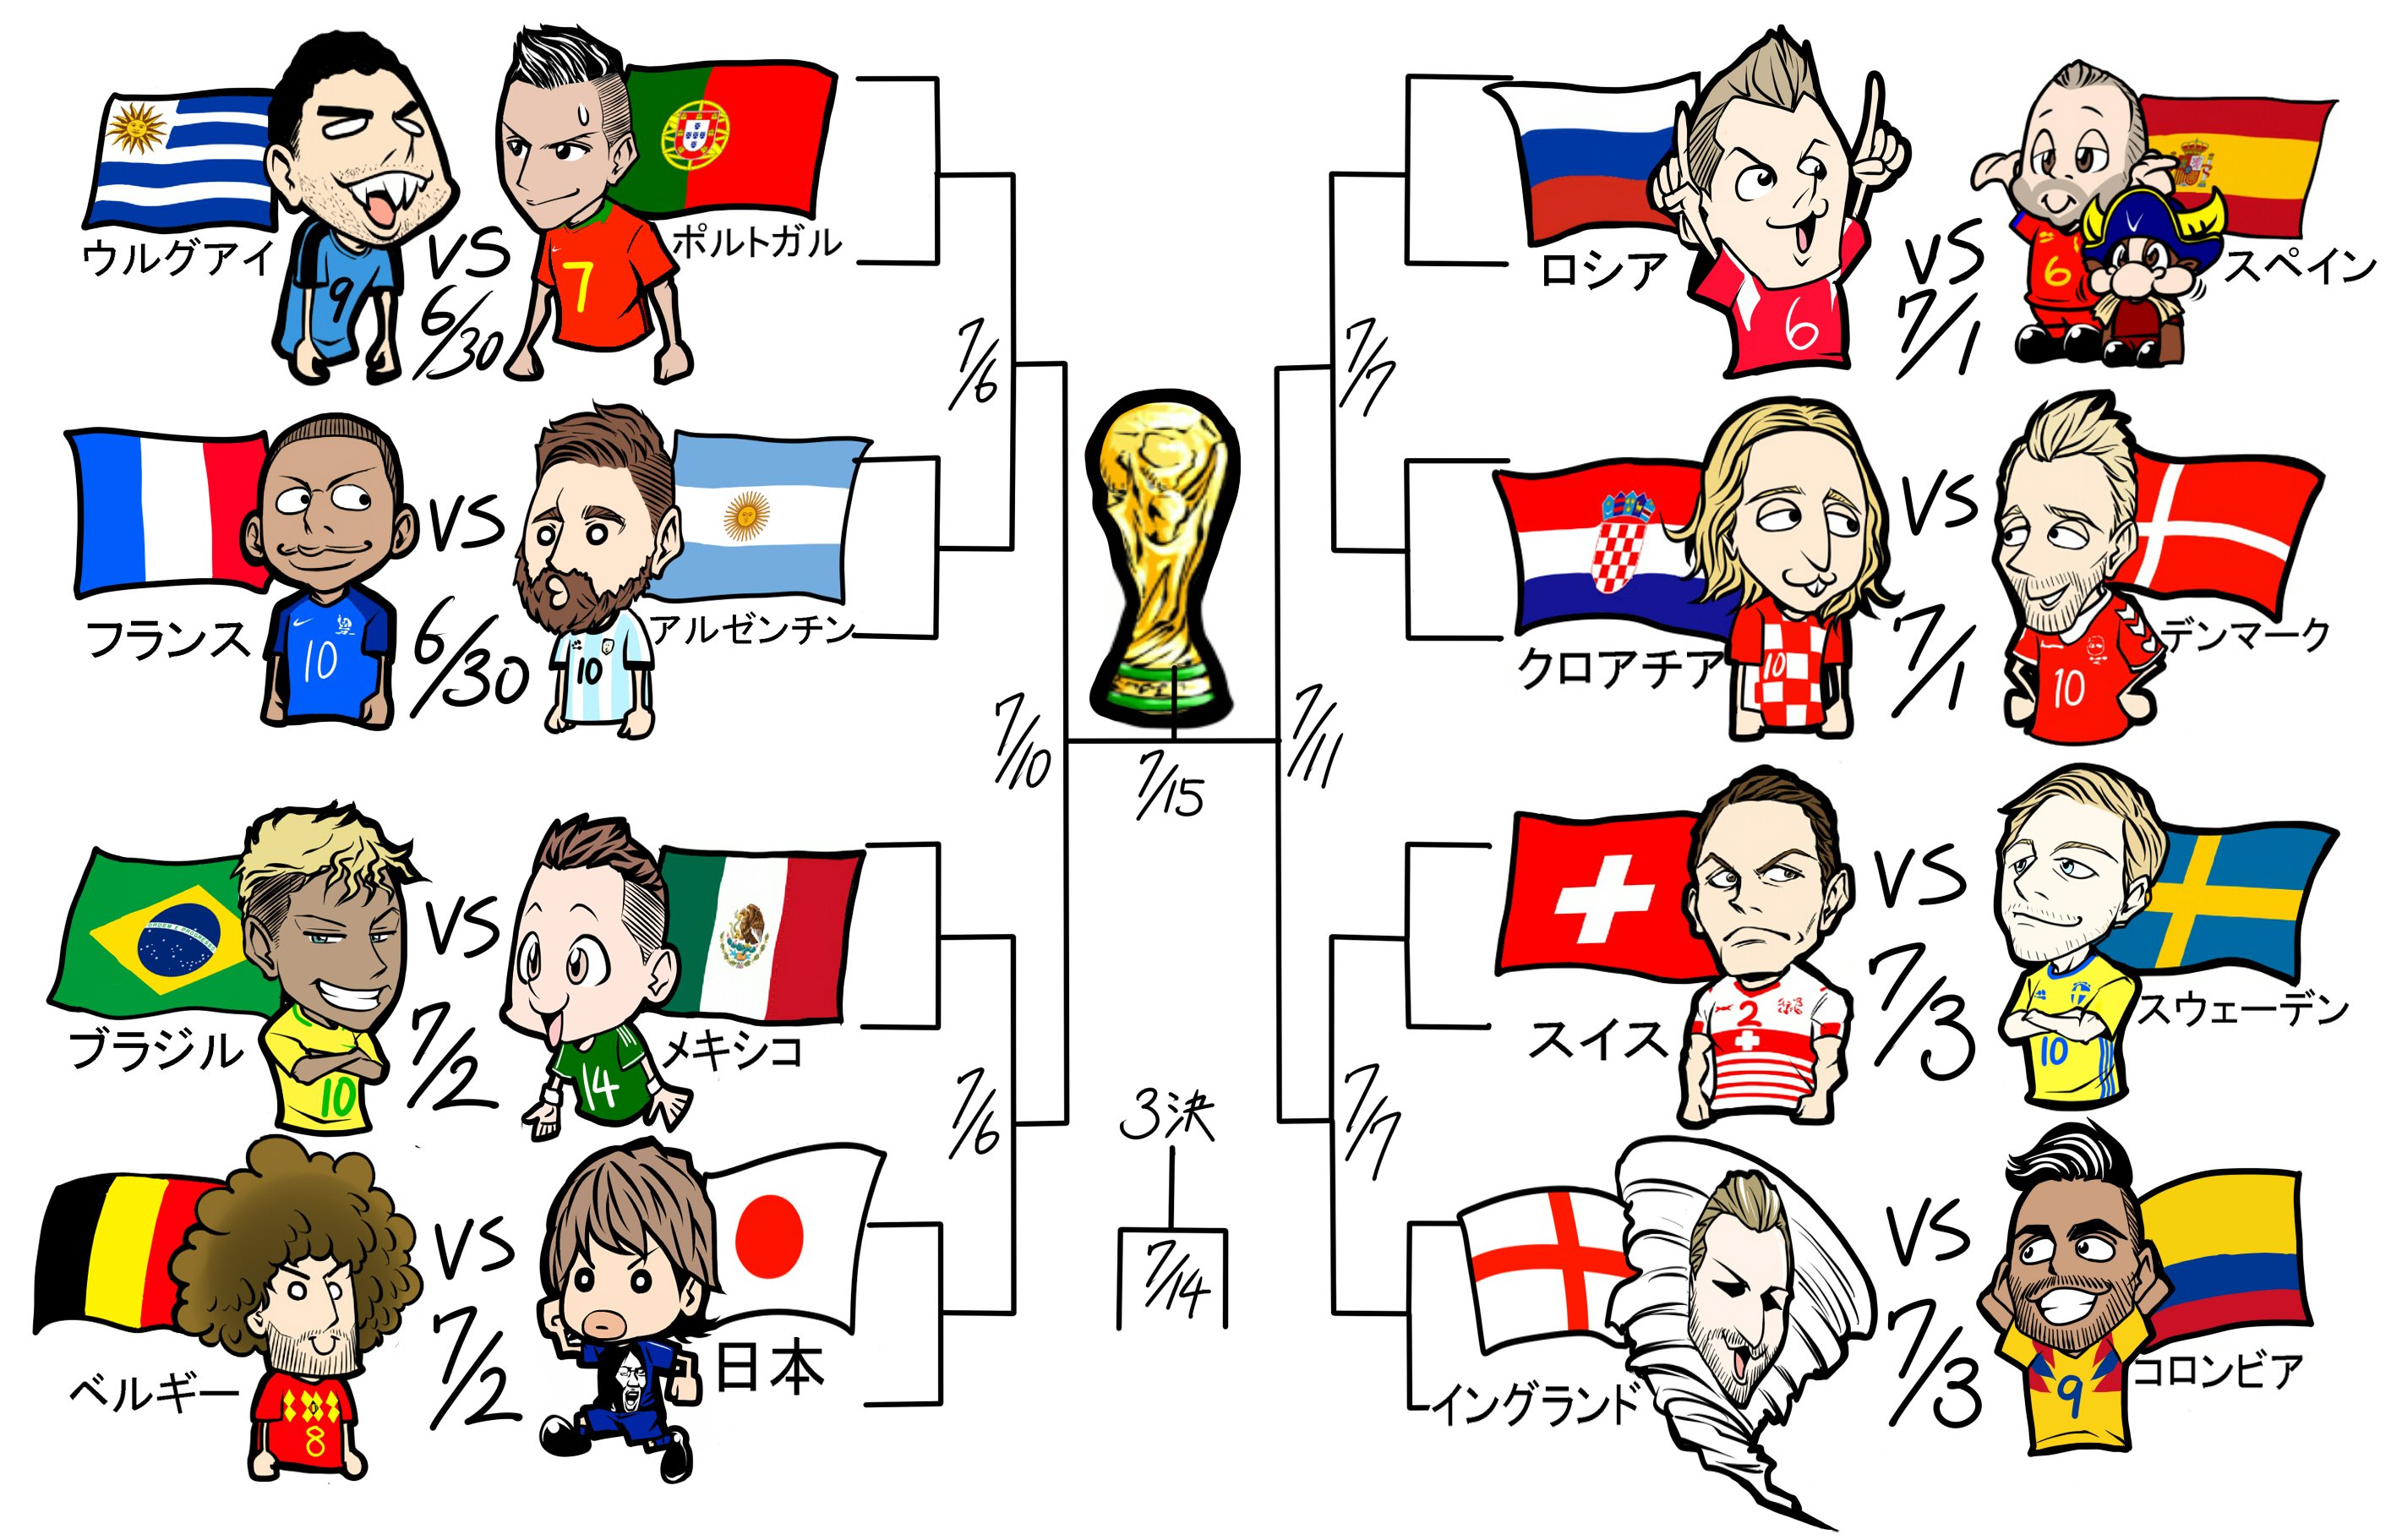 今後に注目!サッカーワールドカップ・グループリーグ結果と決勝トーナメント組み合わせがこれ!